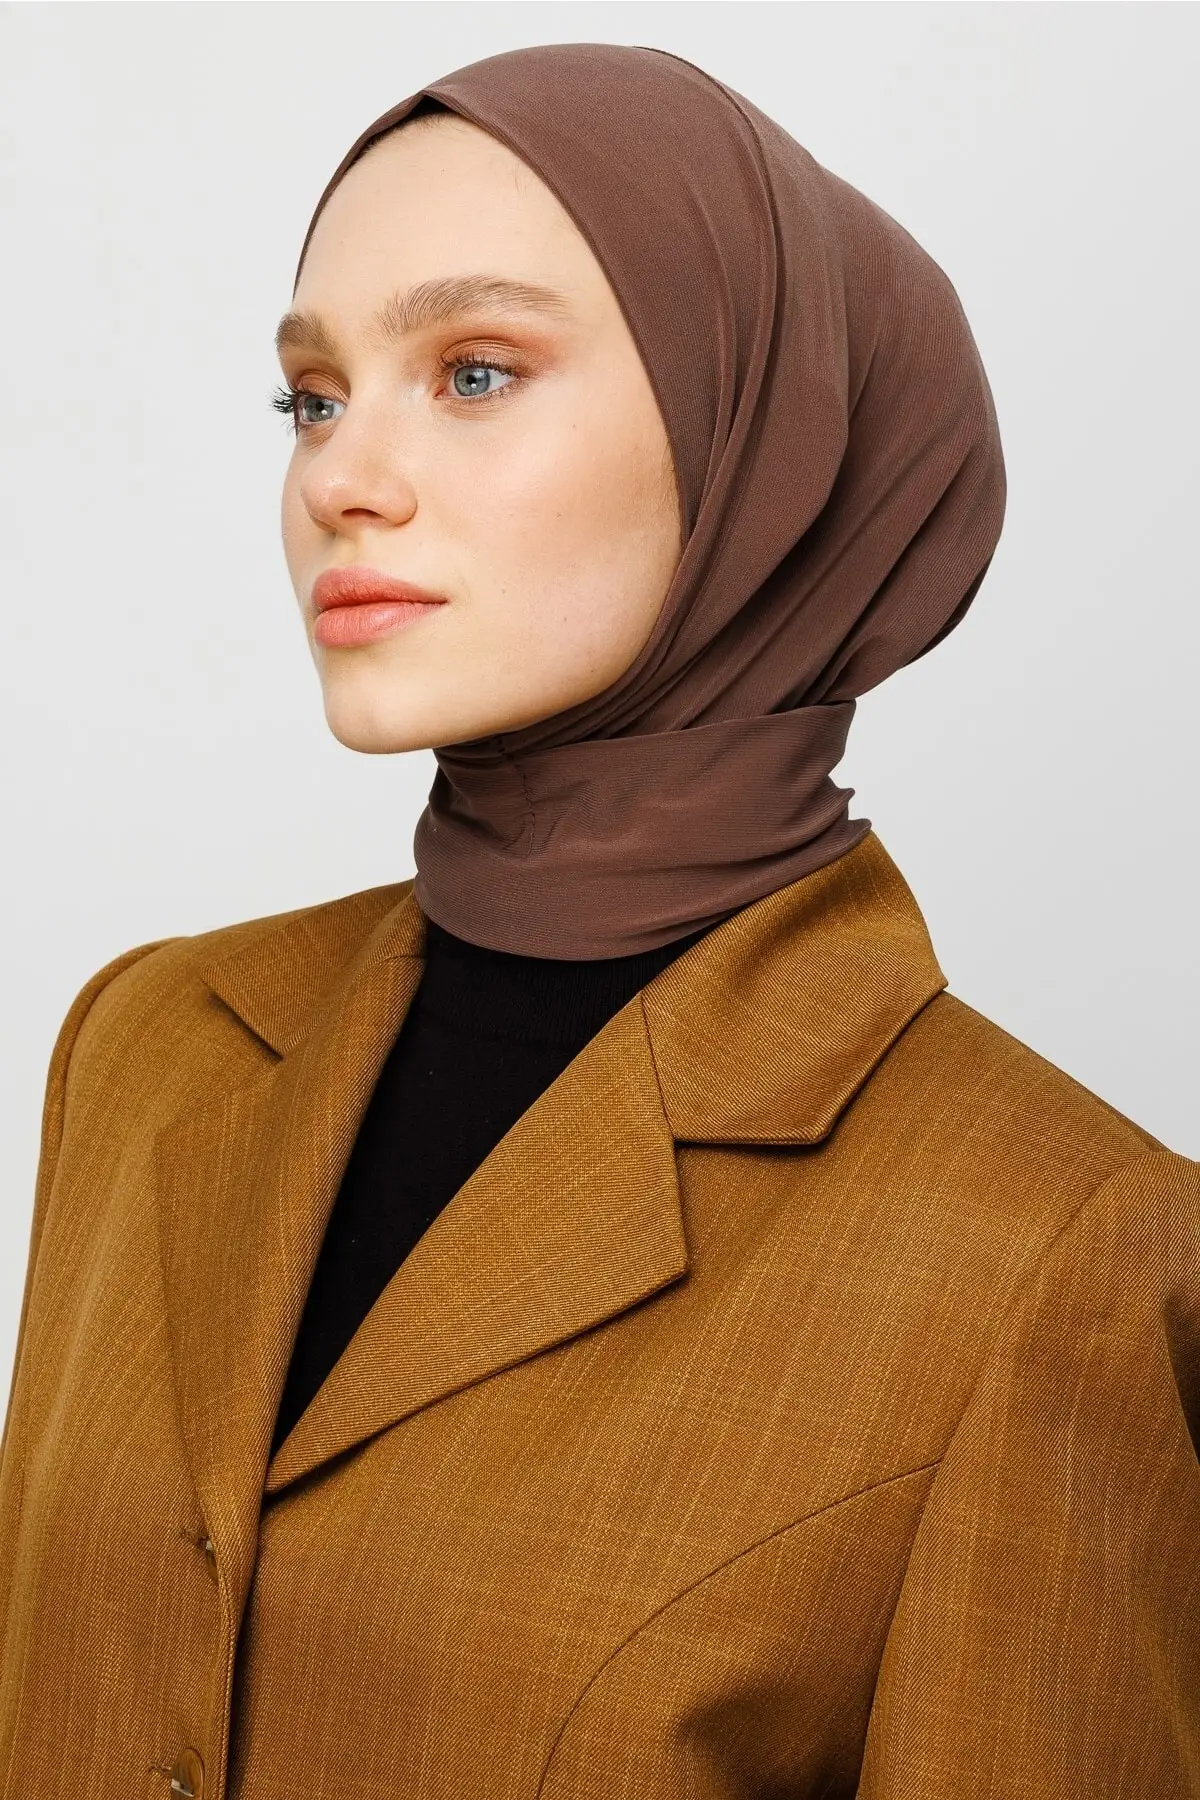 

Women Hijab Dark Kahverengi Snaps Boyunluk Hijab Shawl Polyester Desensiz Hooded Wrinkling durable